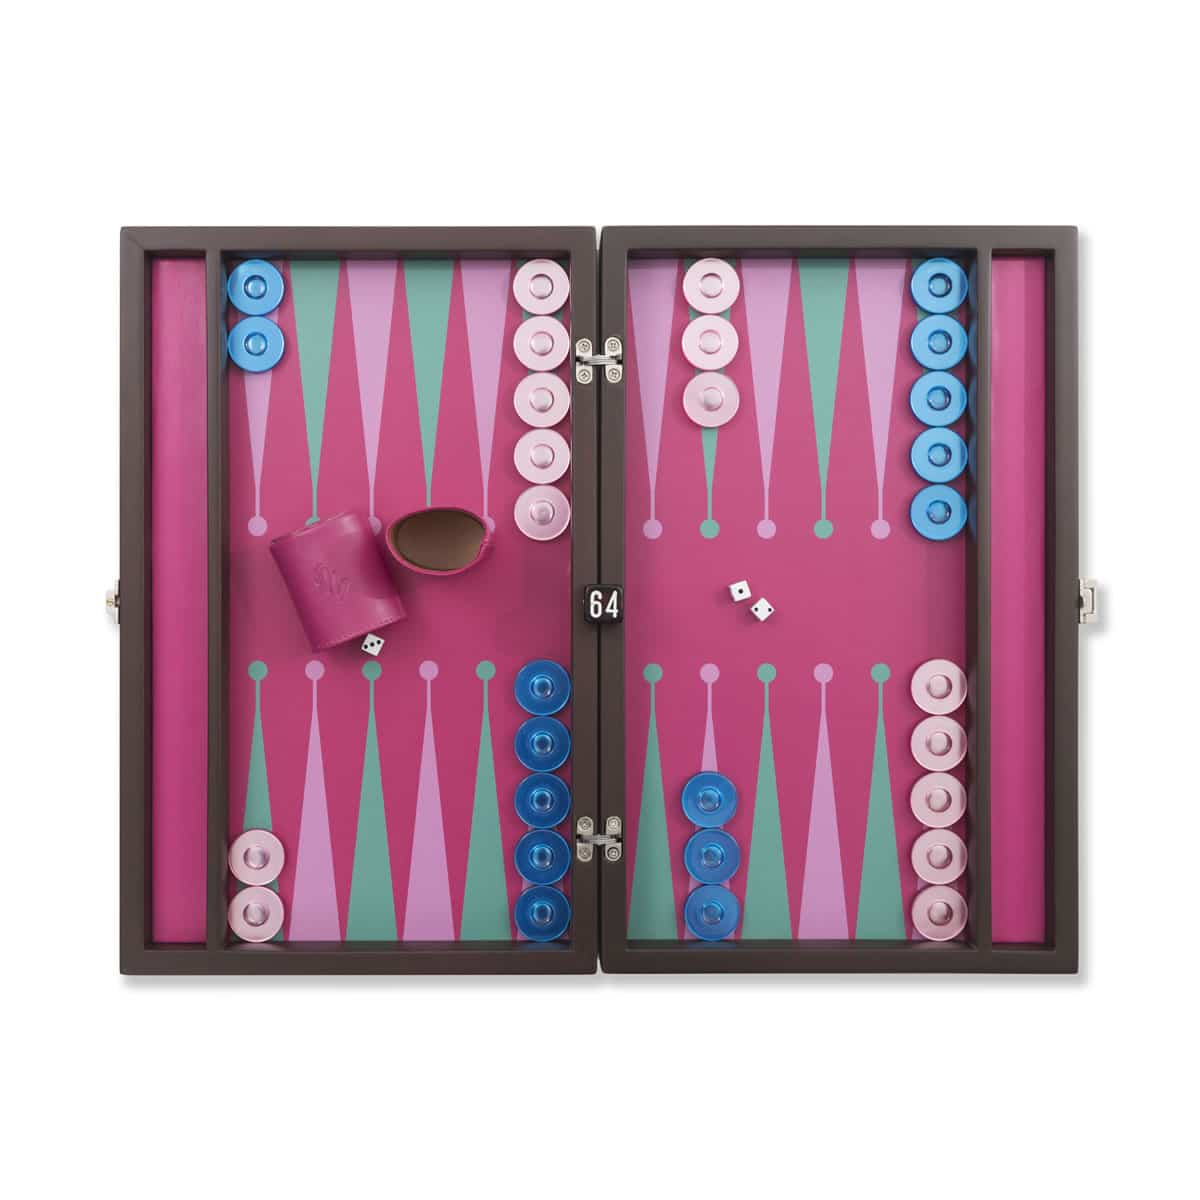 Turkish Backgammon set Luxury Merba Leather Bacckgammon Board